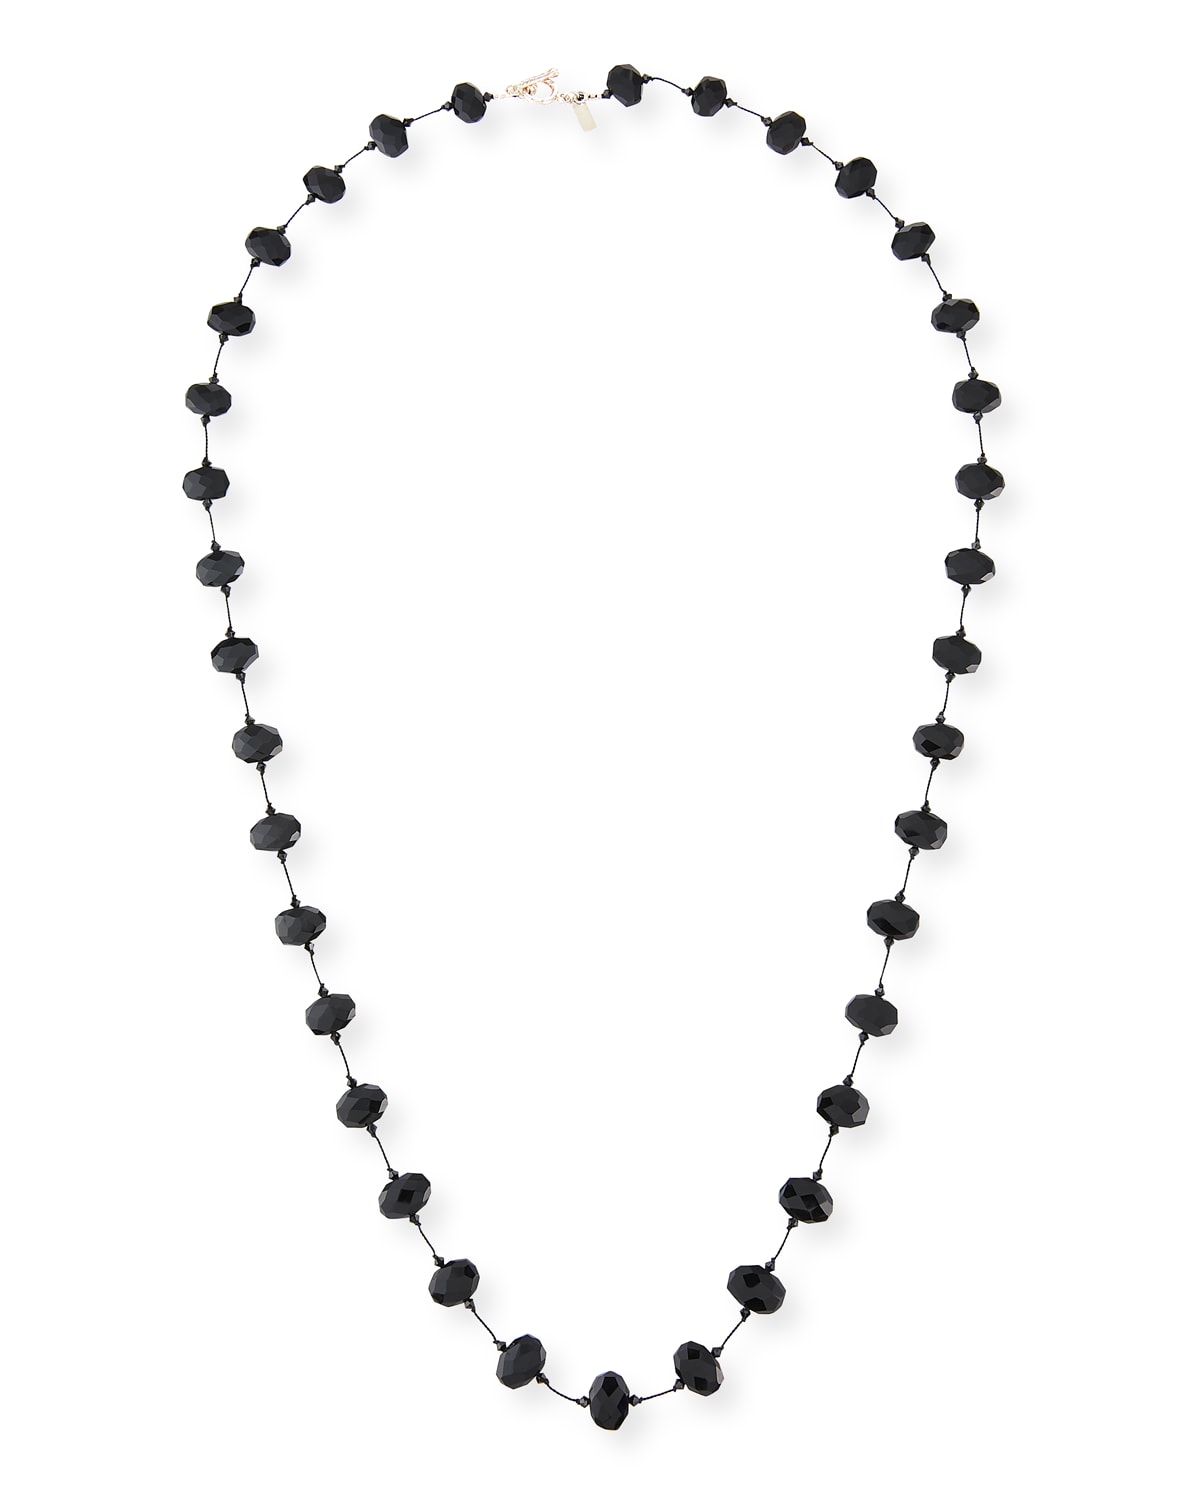 Faceted Black Garnet Necklace, 35"L